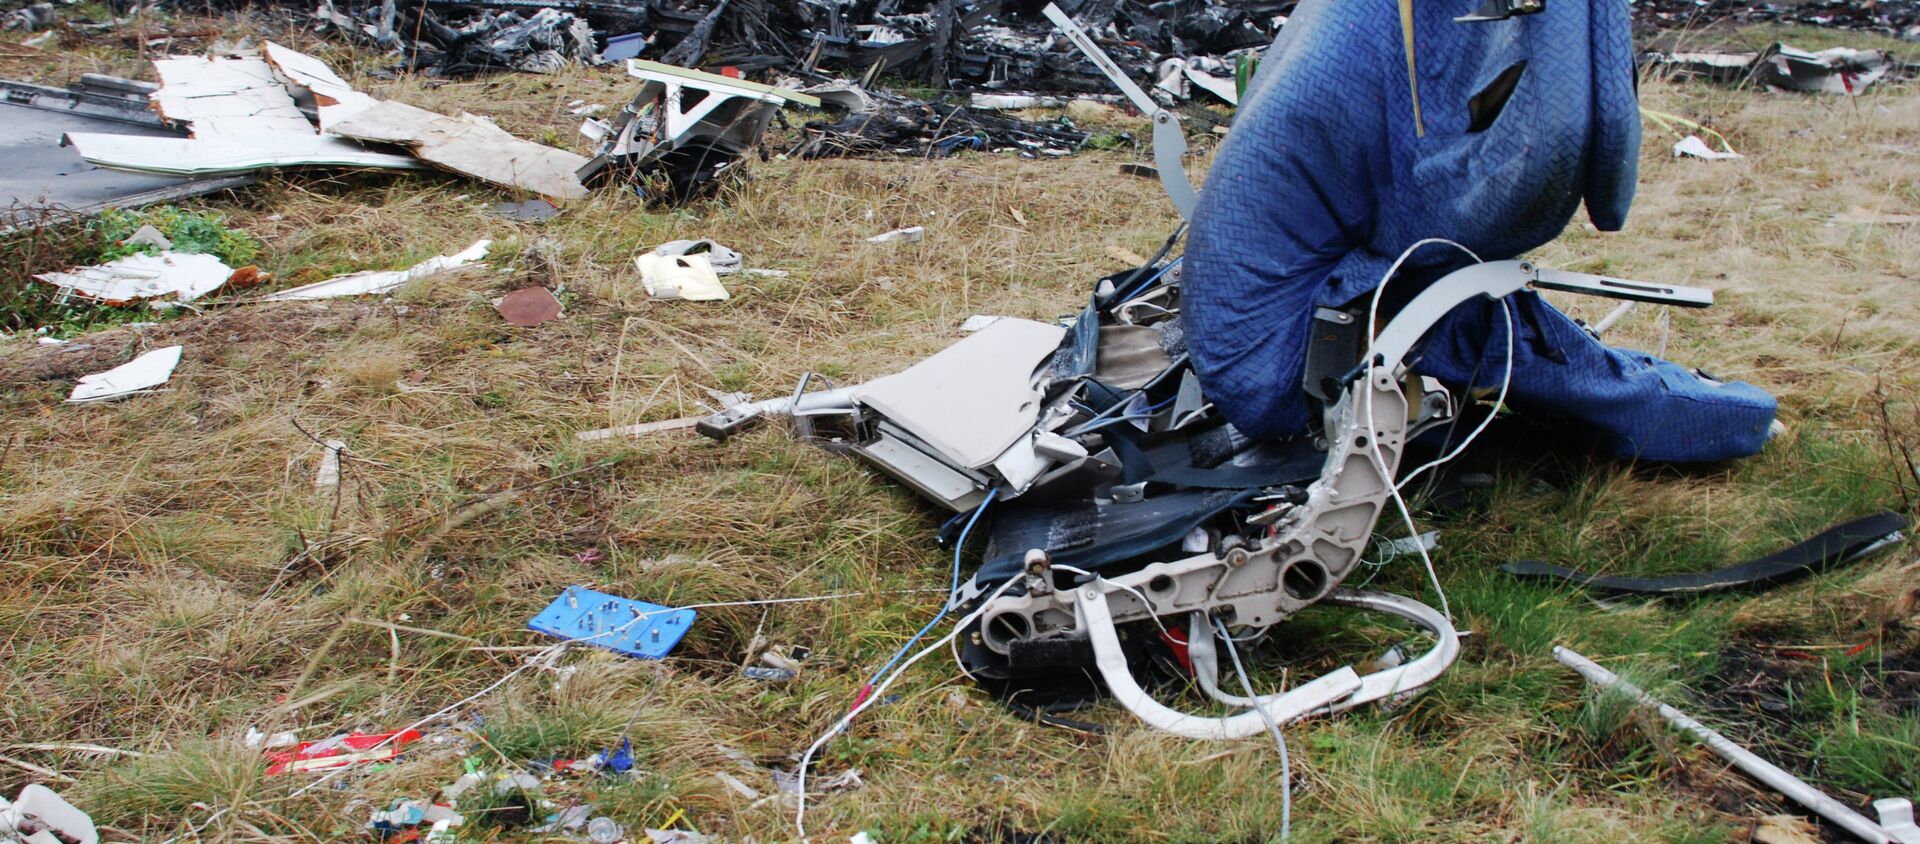 Los restos del avión MH17 derribado en el este de Ucrania - Sputnik Mundo, 1920, 06.06.2018